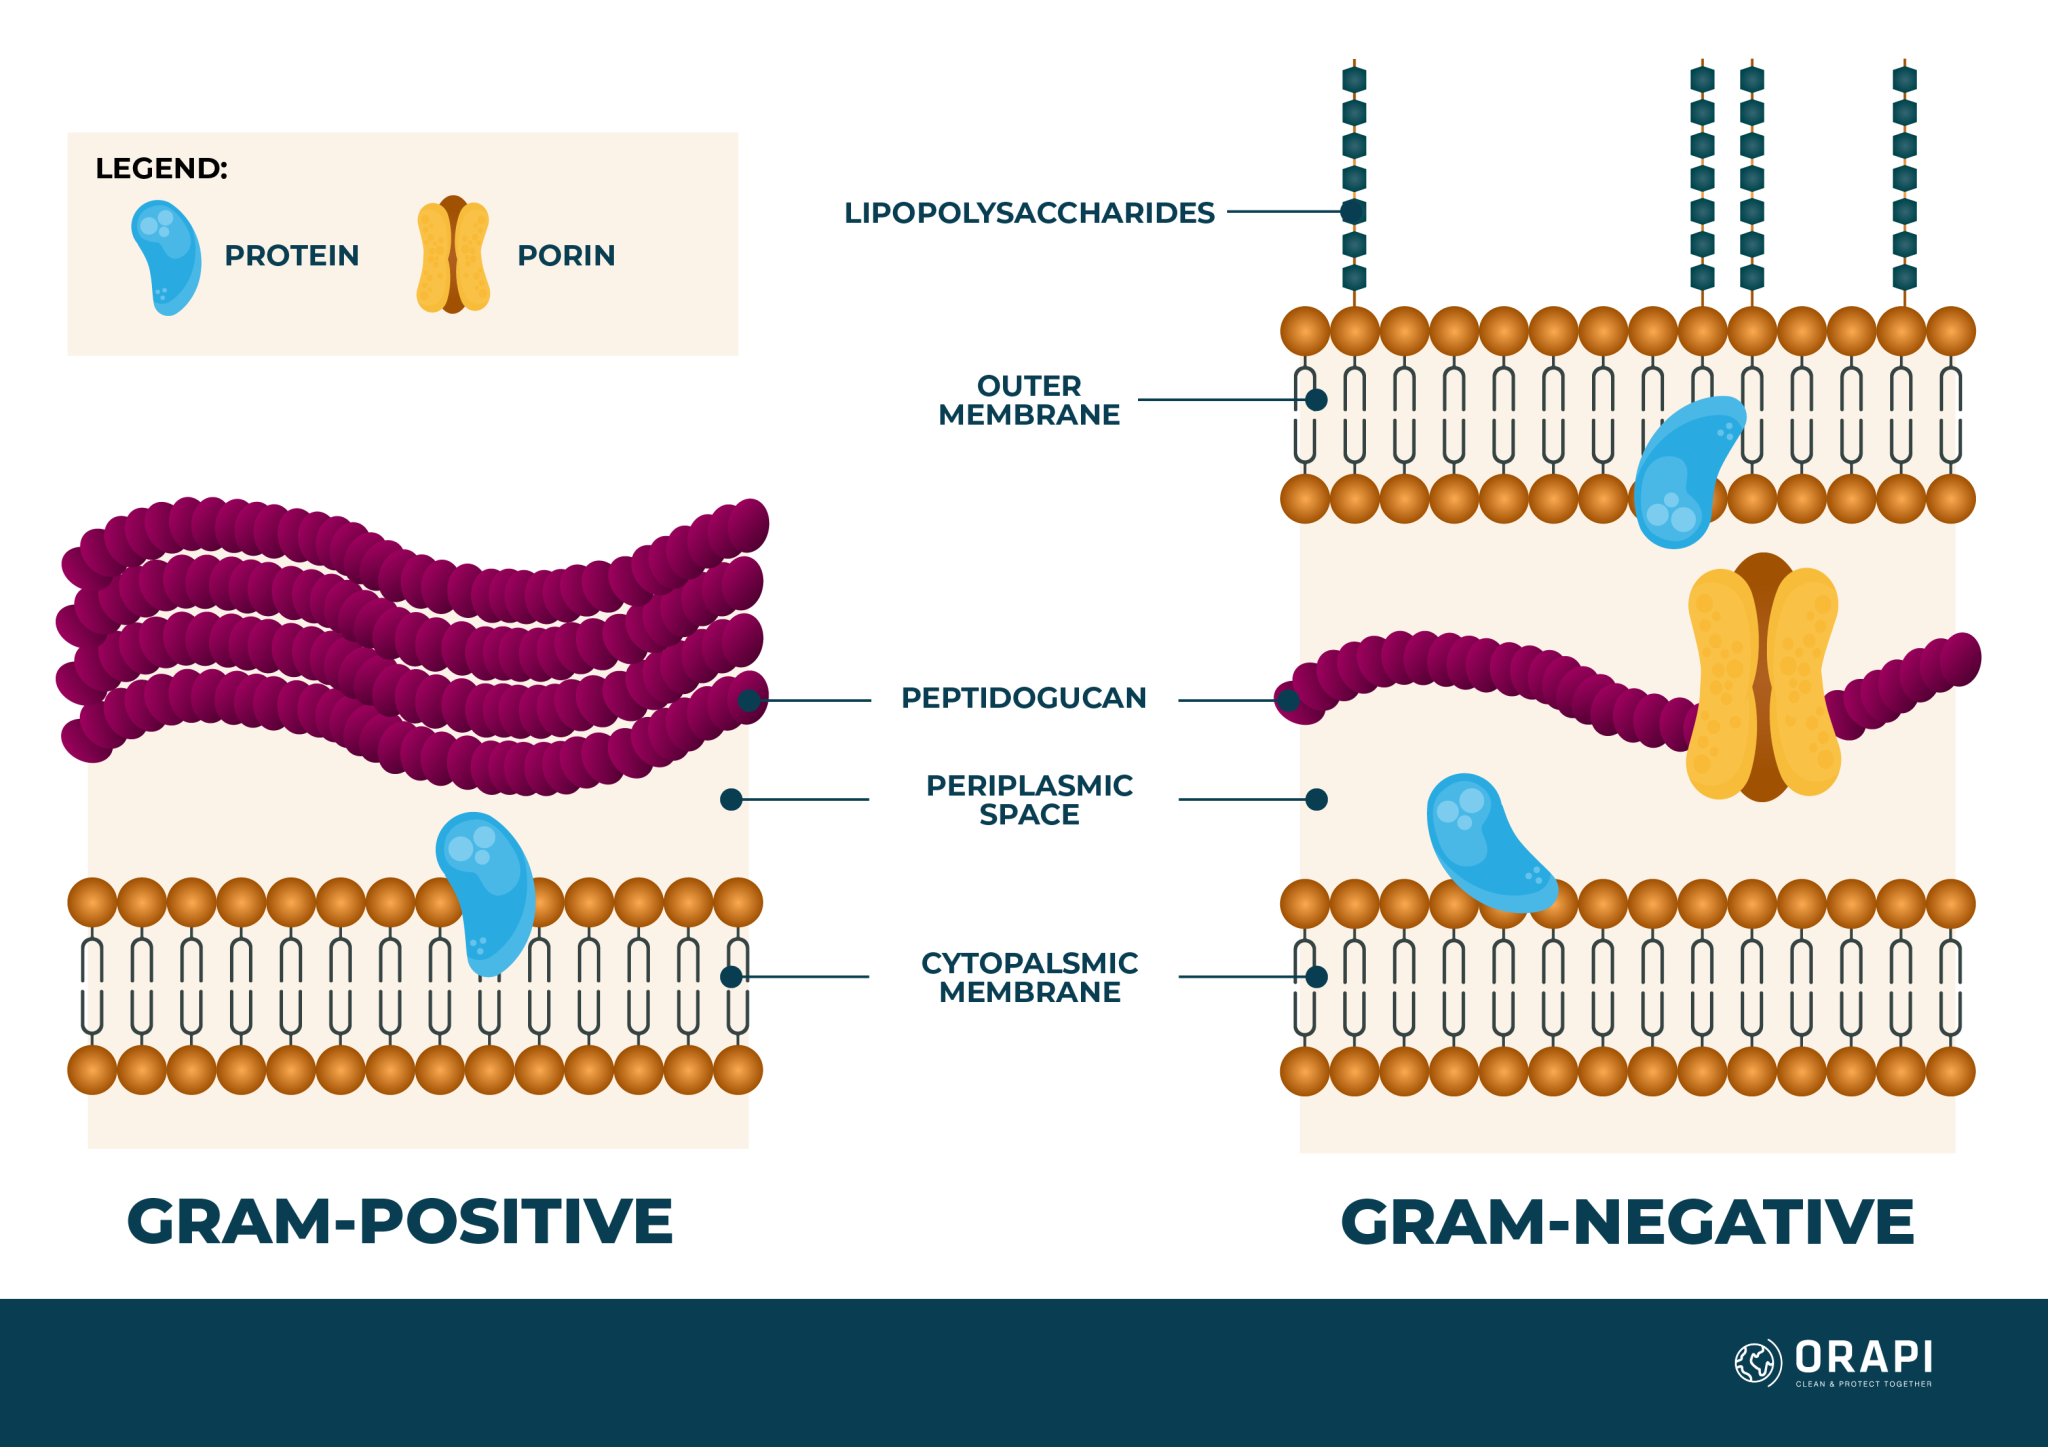 Gram Positive vs Gram Negative Bacteria | ORAPI Asia